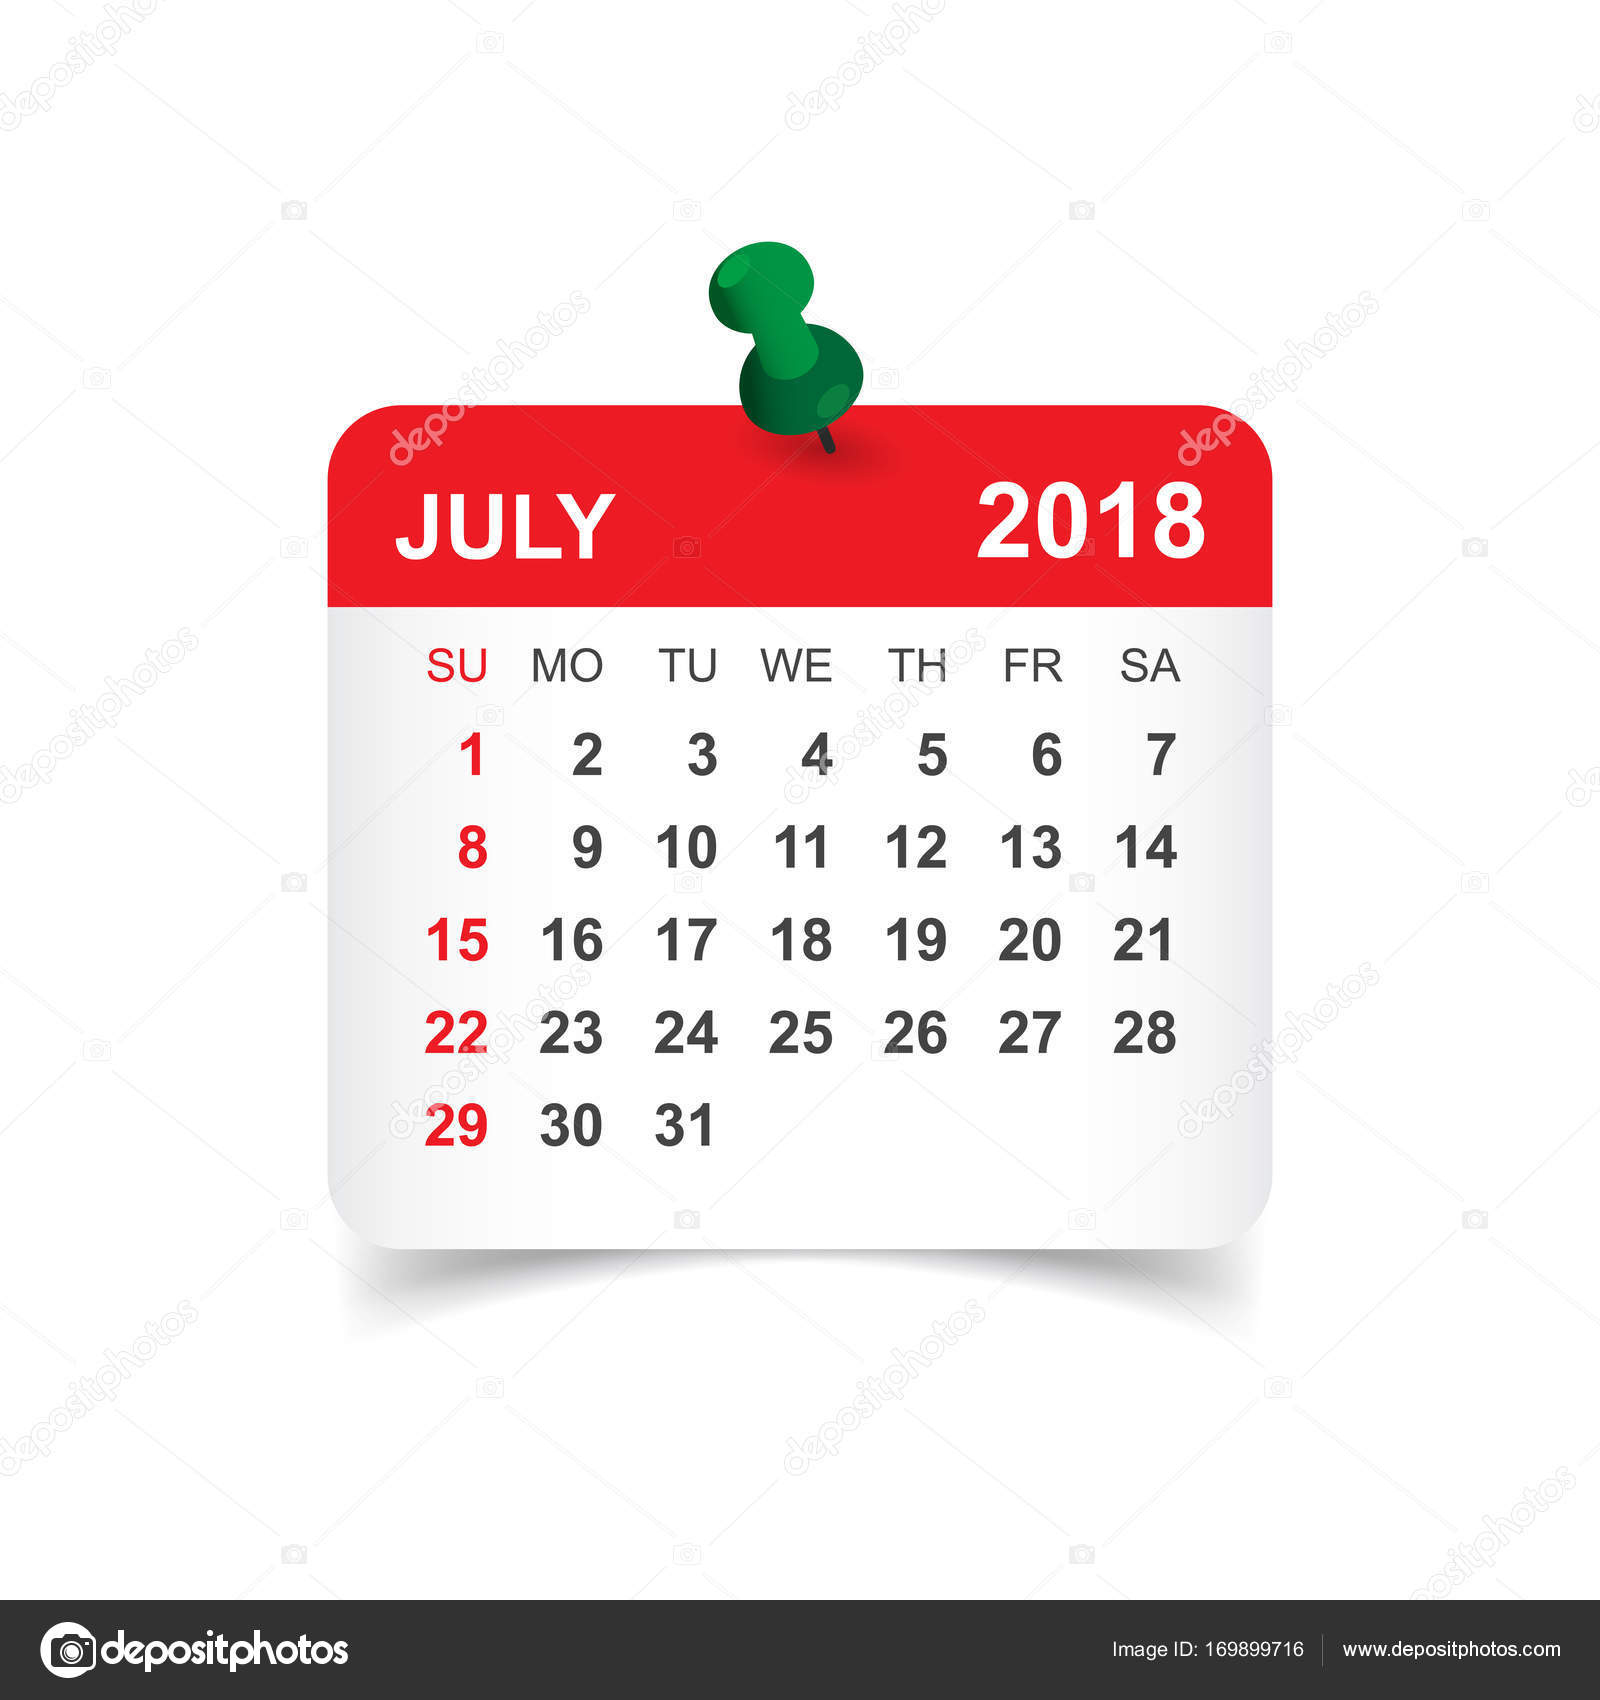 july-2018-calendar-calendar-sticker-design-template-week-start